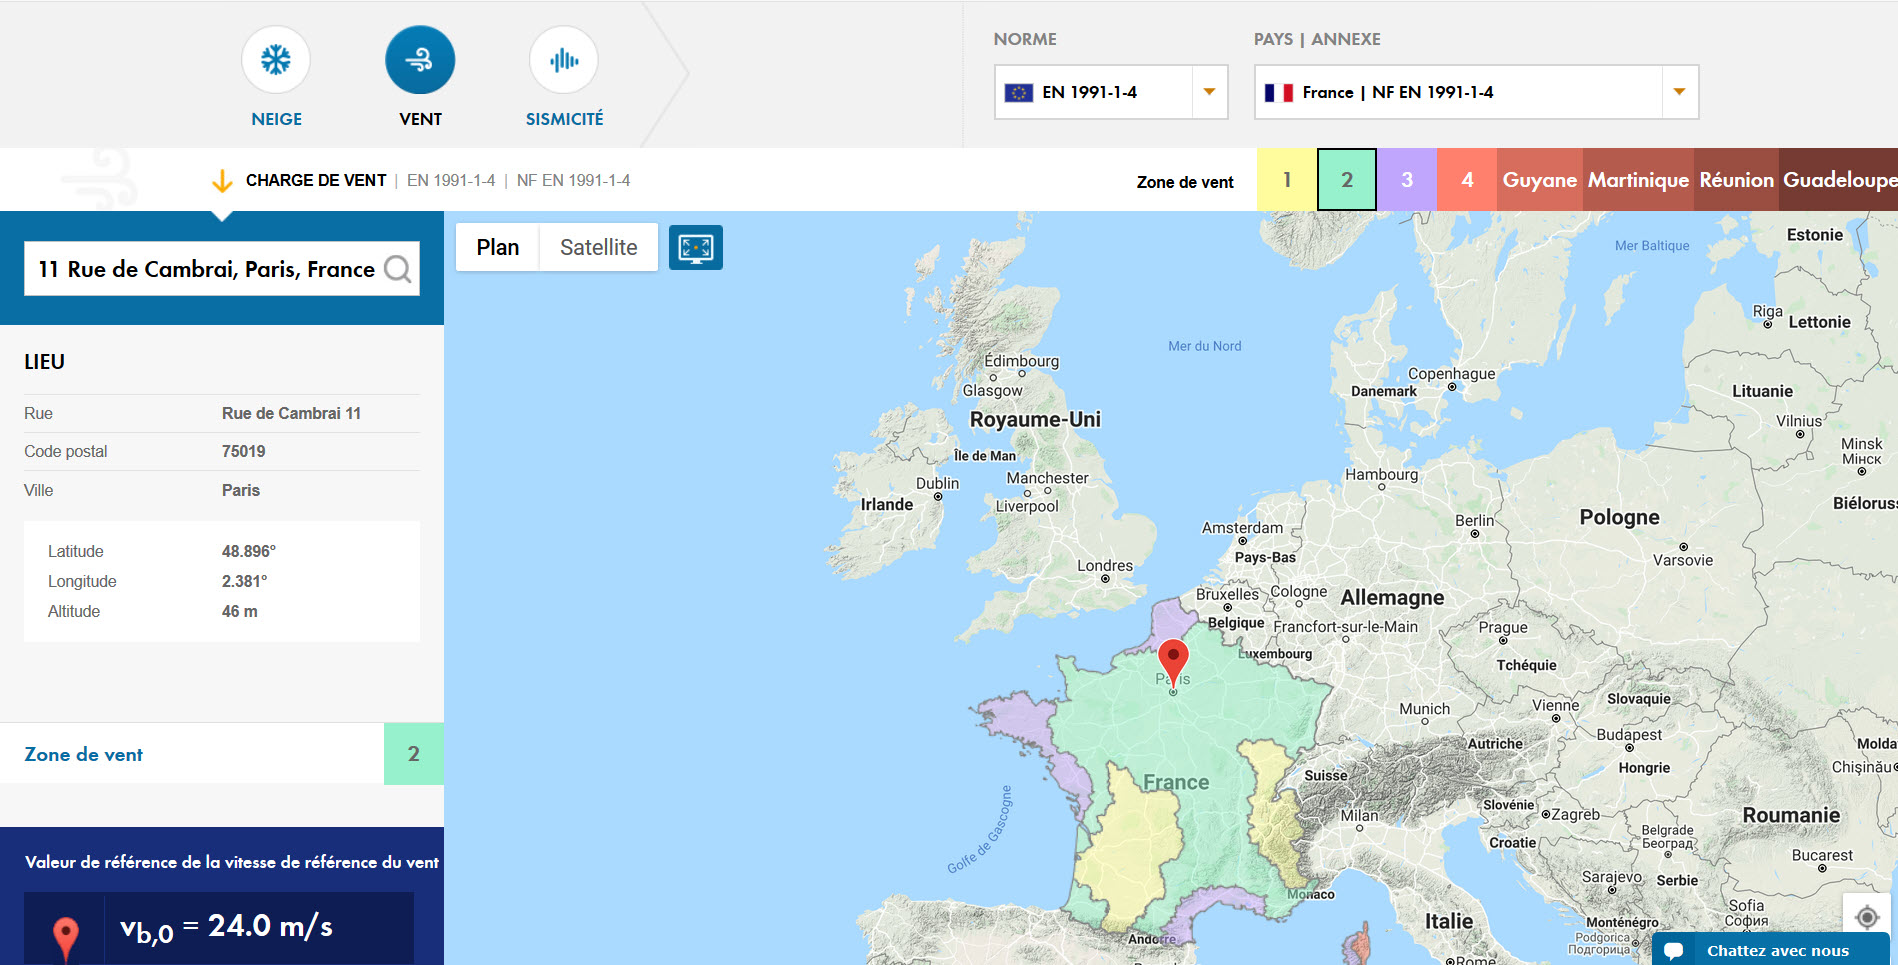 Détermination des charges de vent avec l'outil de géolocalisation en ligne Dlubal grâce à des services de cartographie basés sur le Cloud